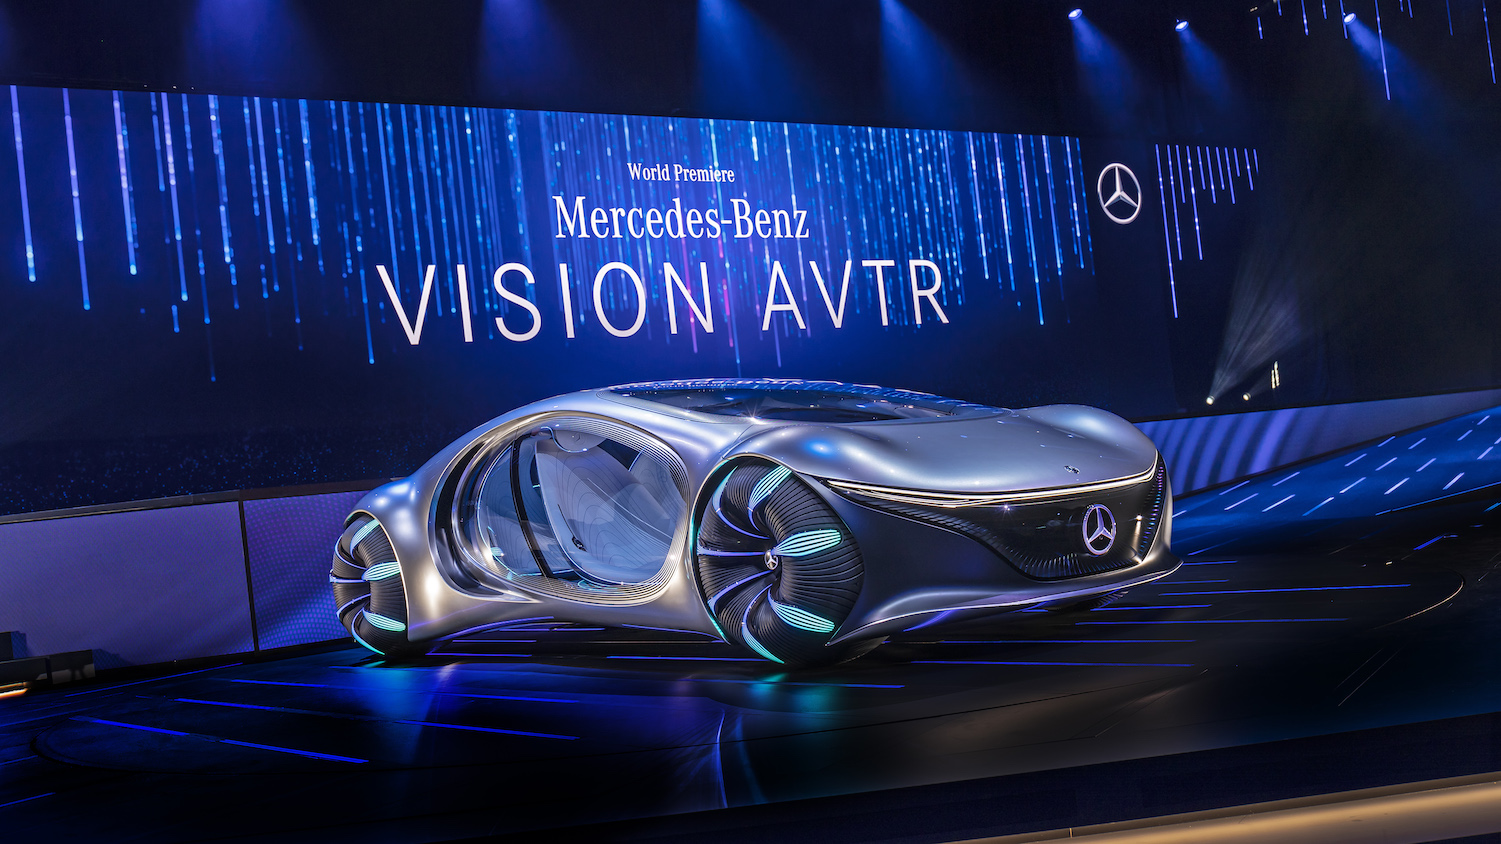 La voiture d’un futur lointain de Mercedes Benz